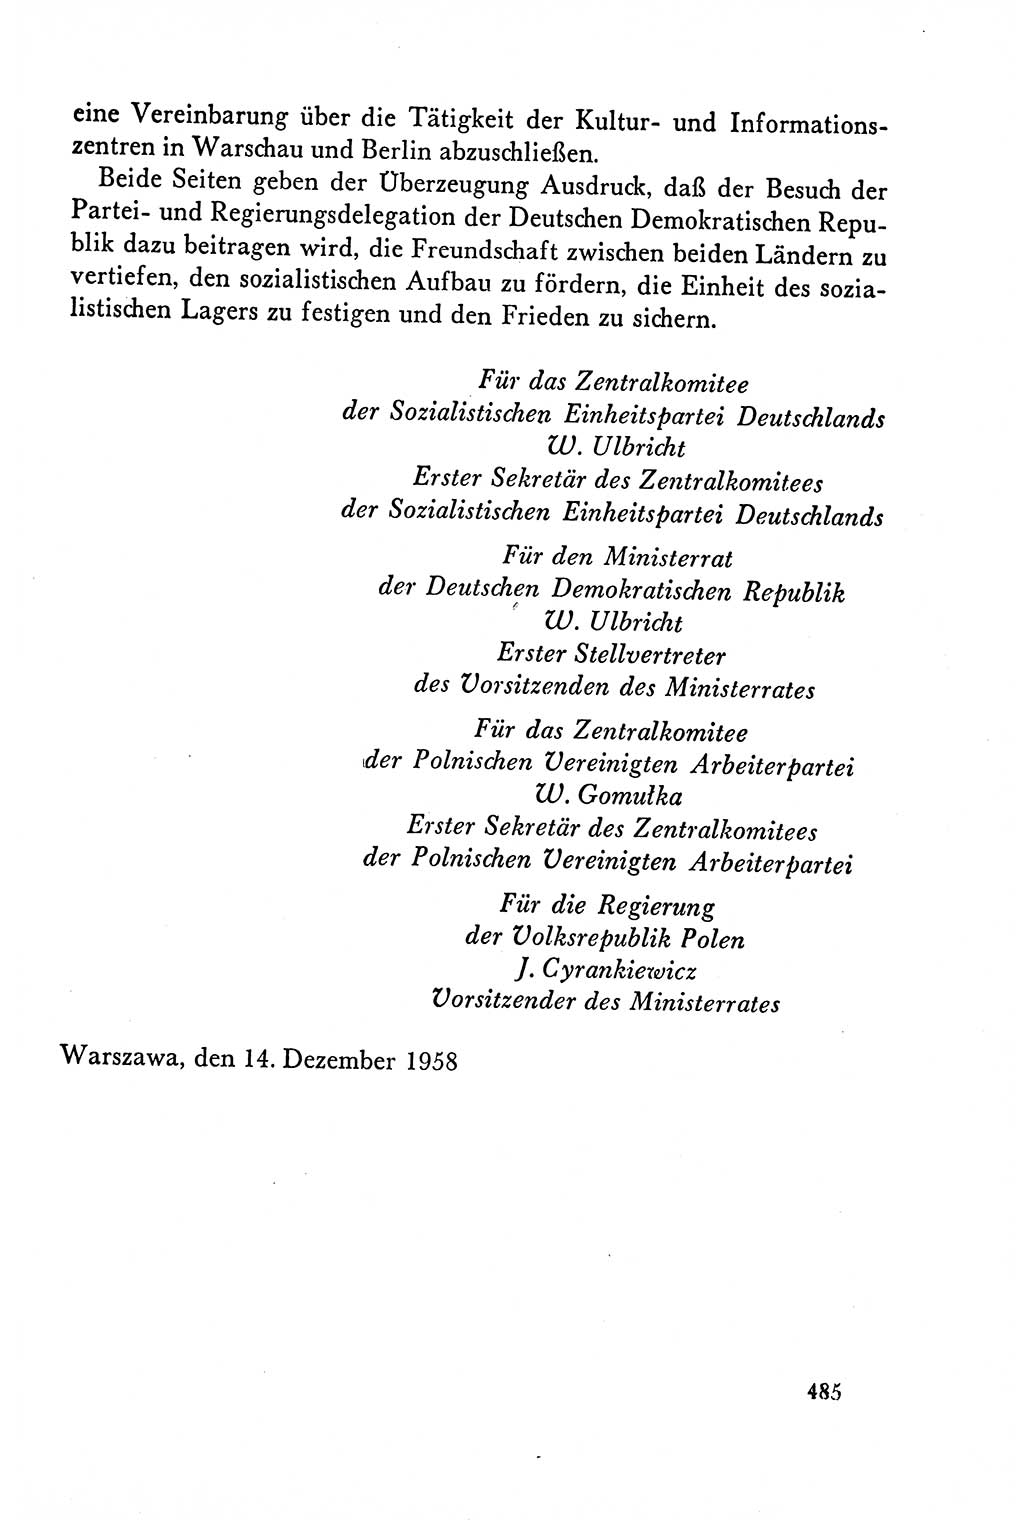 Dokumente der Sozialistischen Einheitspartei Deutschlands (SED) [Deutsche Demokratische Republik (DDR)] 1958-1959, Seite 485 (Dok. SED DDR 1958-1959, S. 485)